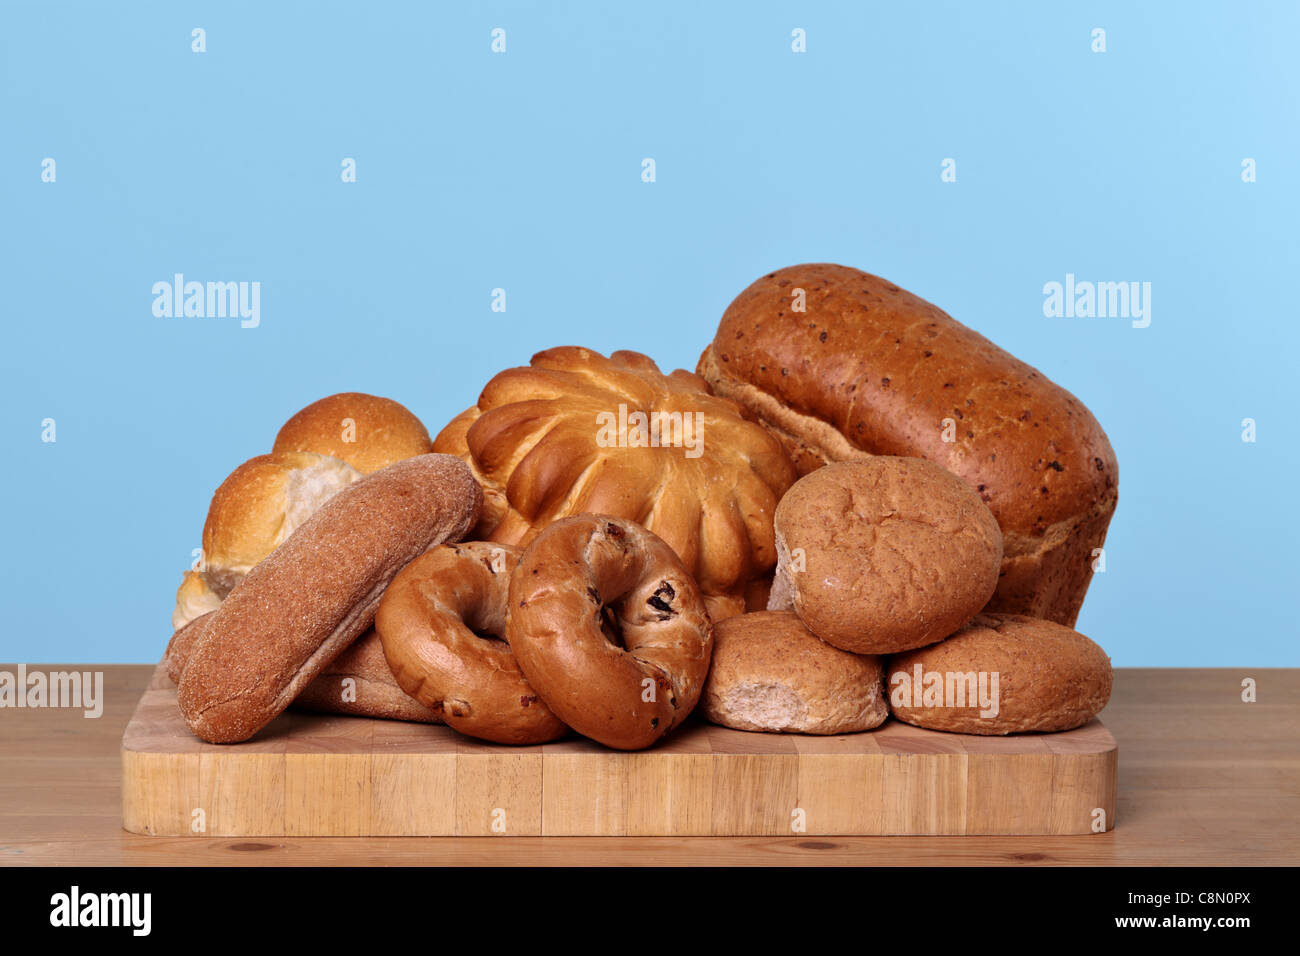 Foto de diferentes tipos de panes y bollos de pan sobre una tabla de madera. Foto de stock